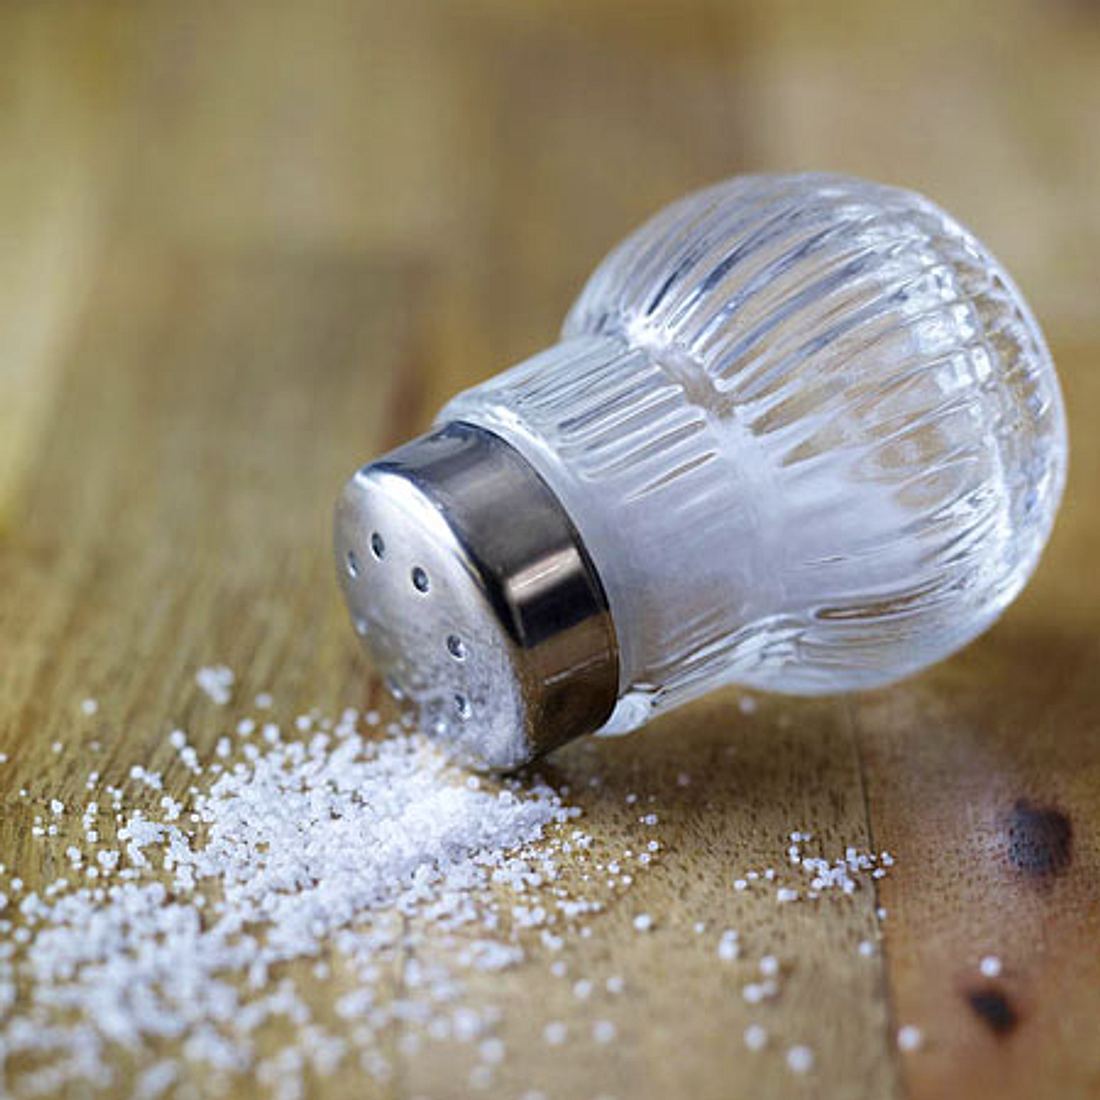 Salz - das Kristall für die richtige Würze